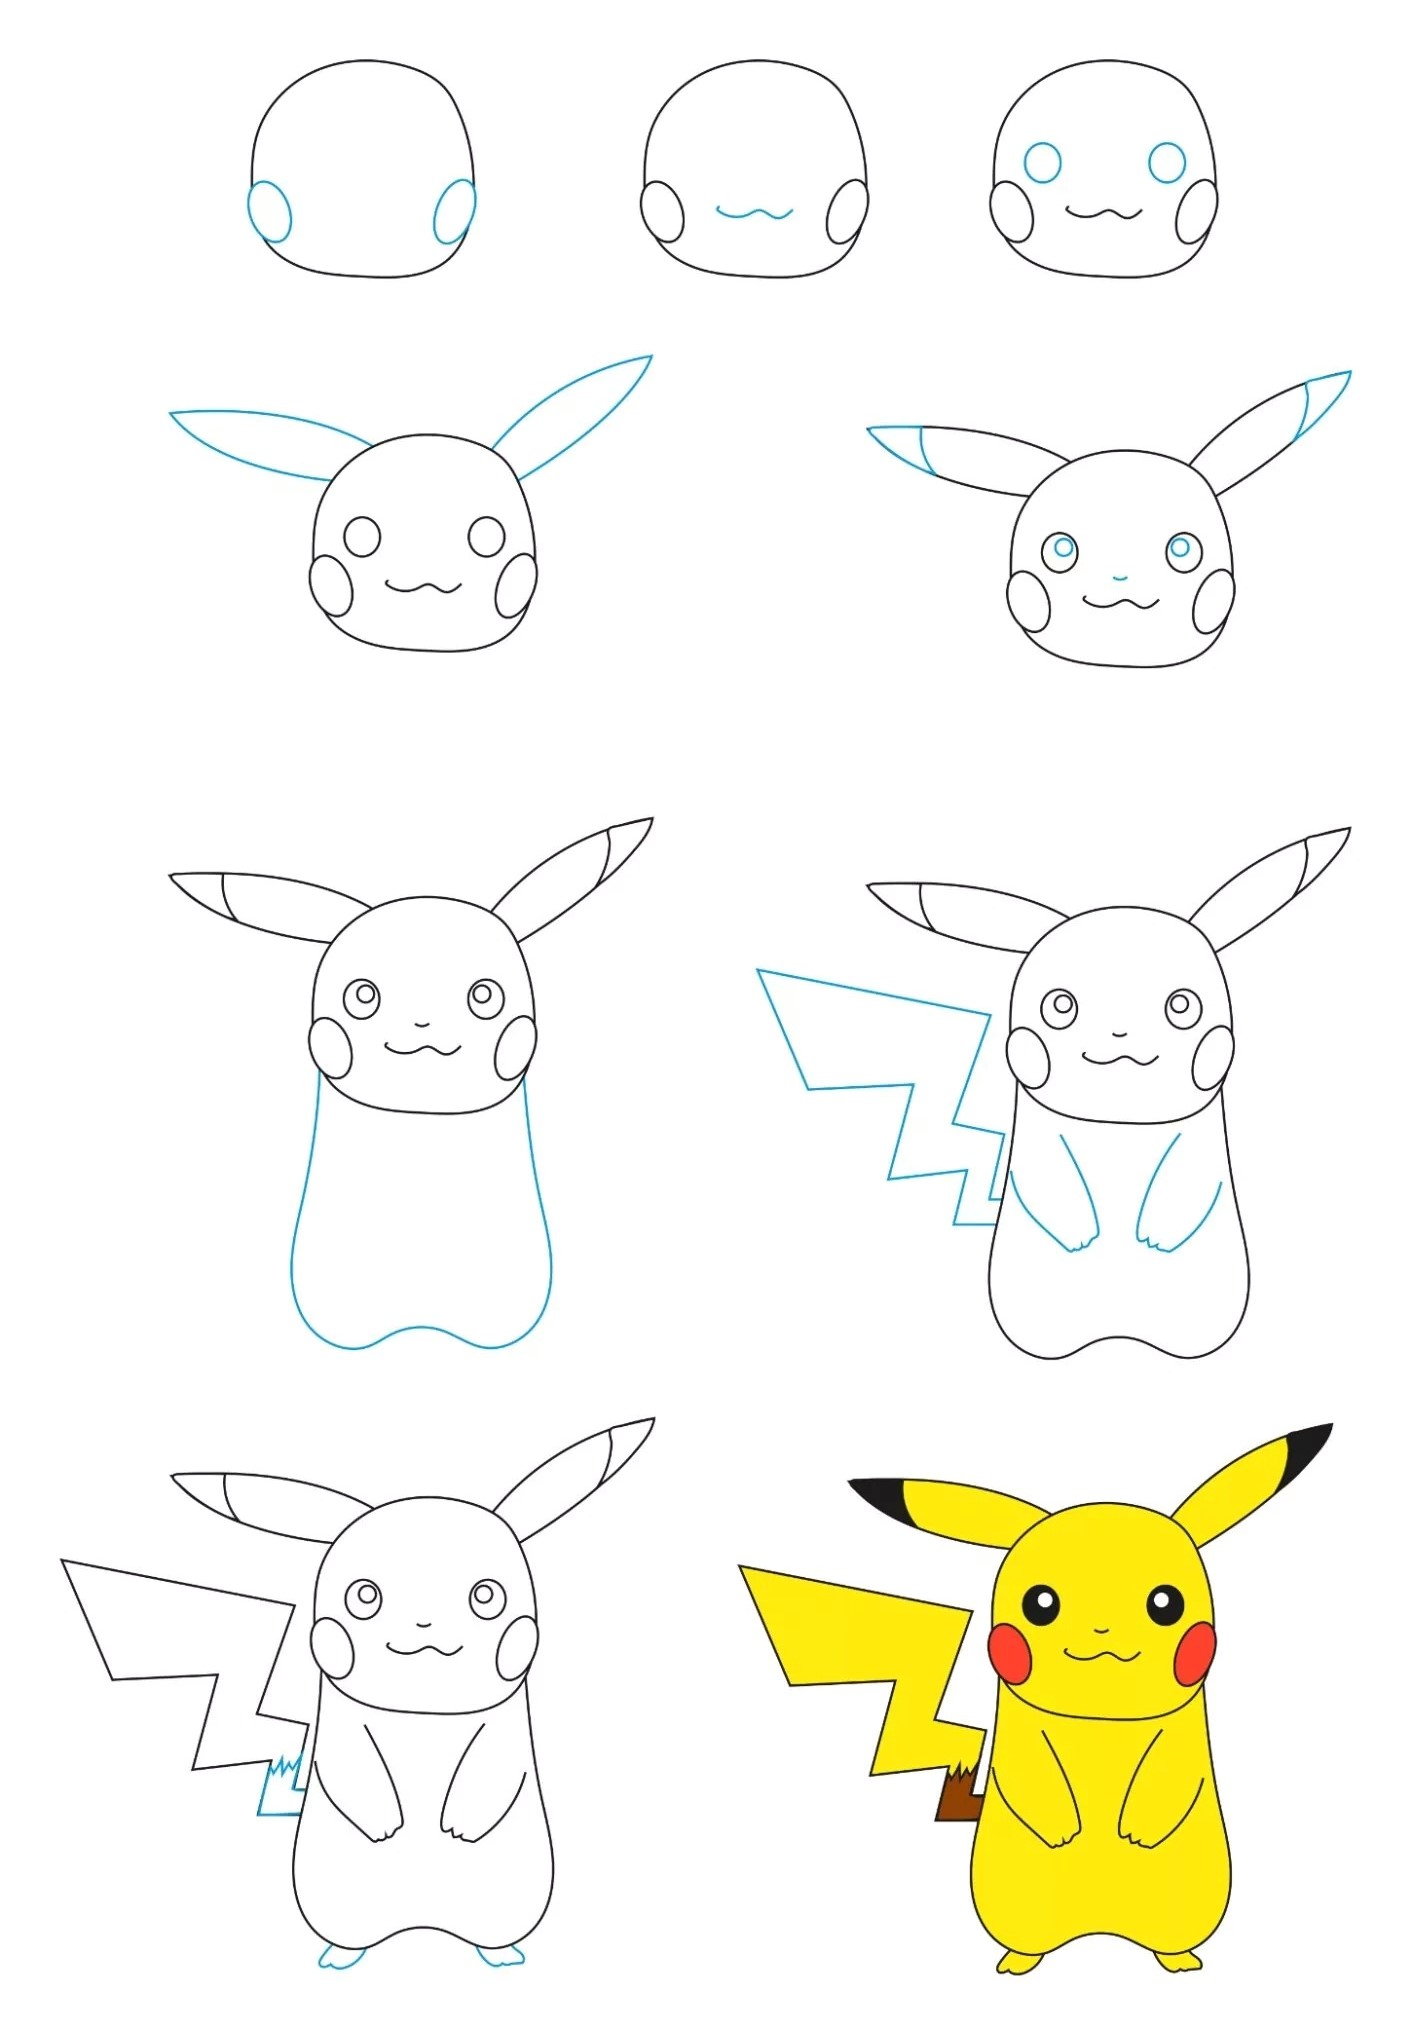 Vẽ Pikachu: Bạn yêu thích vẽ tranh và với bộ phim hoạt hình các loài Pokémon? Hãy cùng tham gia vào bài hướng dẫn vẽ Pikachu dễ thương và tạo ra những tác phẩm nghệ thuật độc đáo của riêng mình. Đừng quên chia sẻ cho chúng tôi những bức vẽ tuyệt vời của bạn nhé!